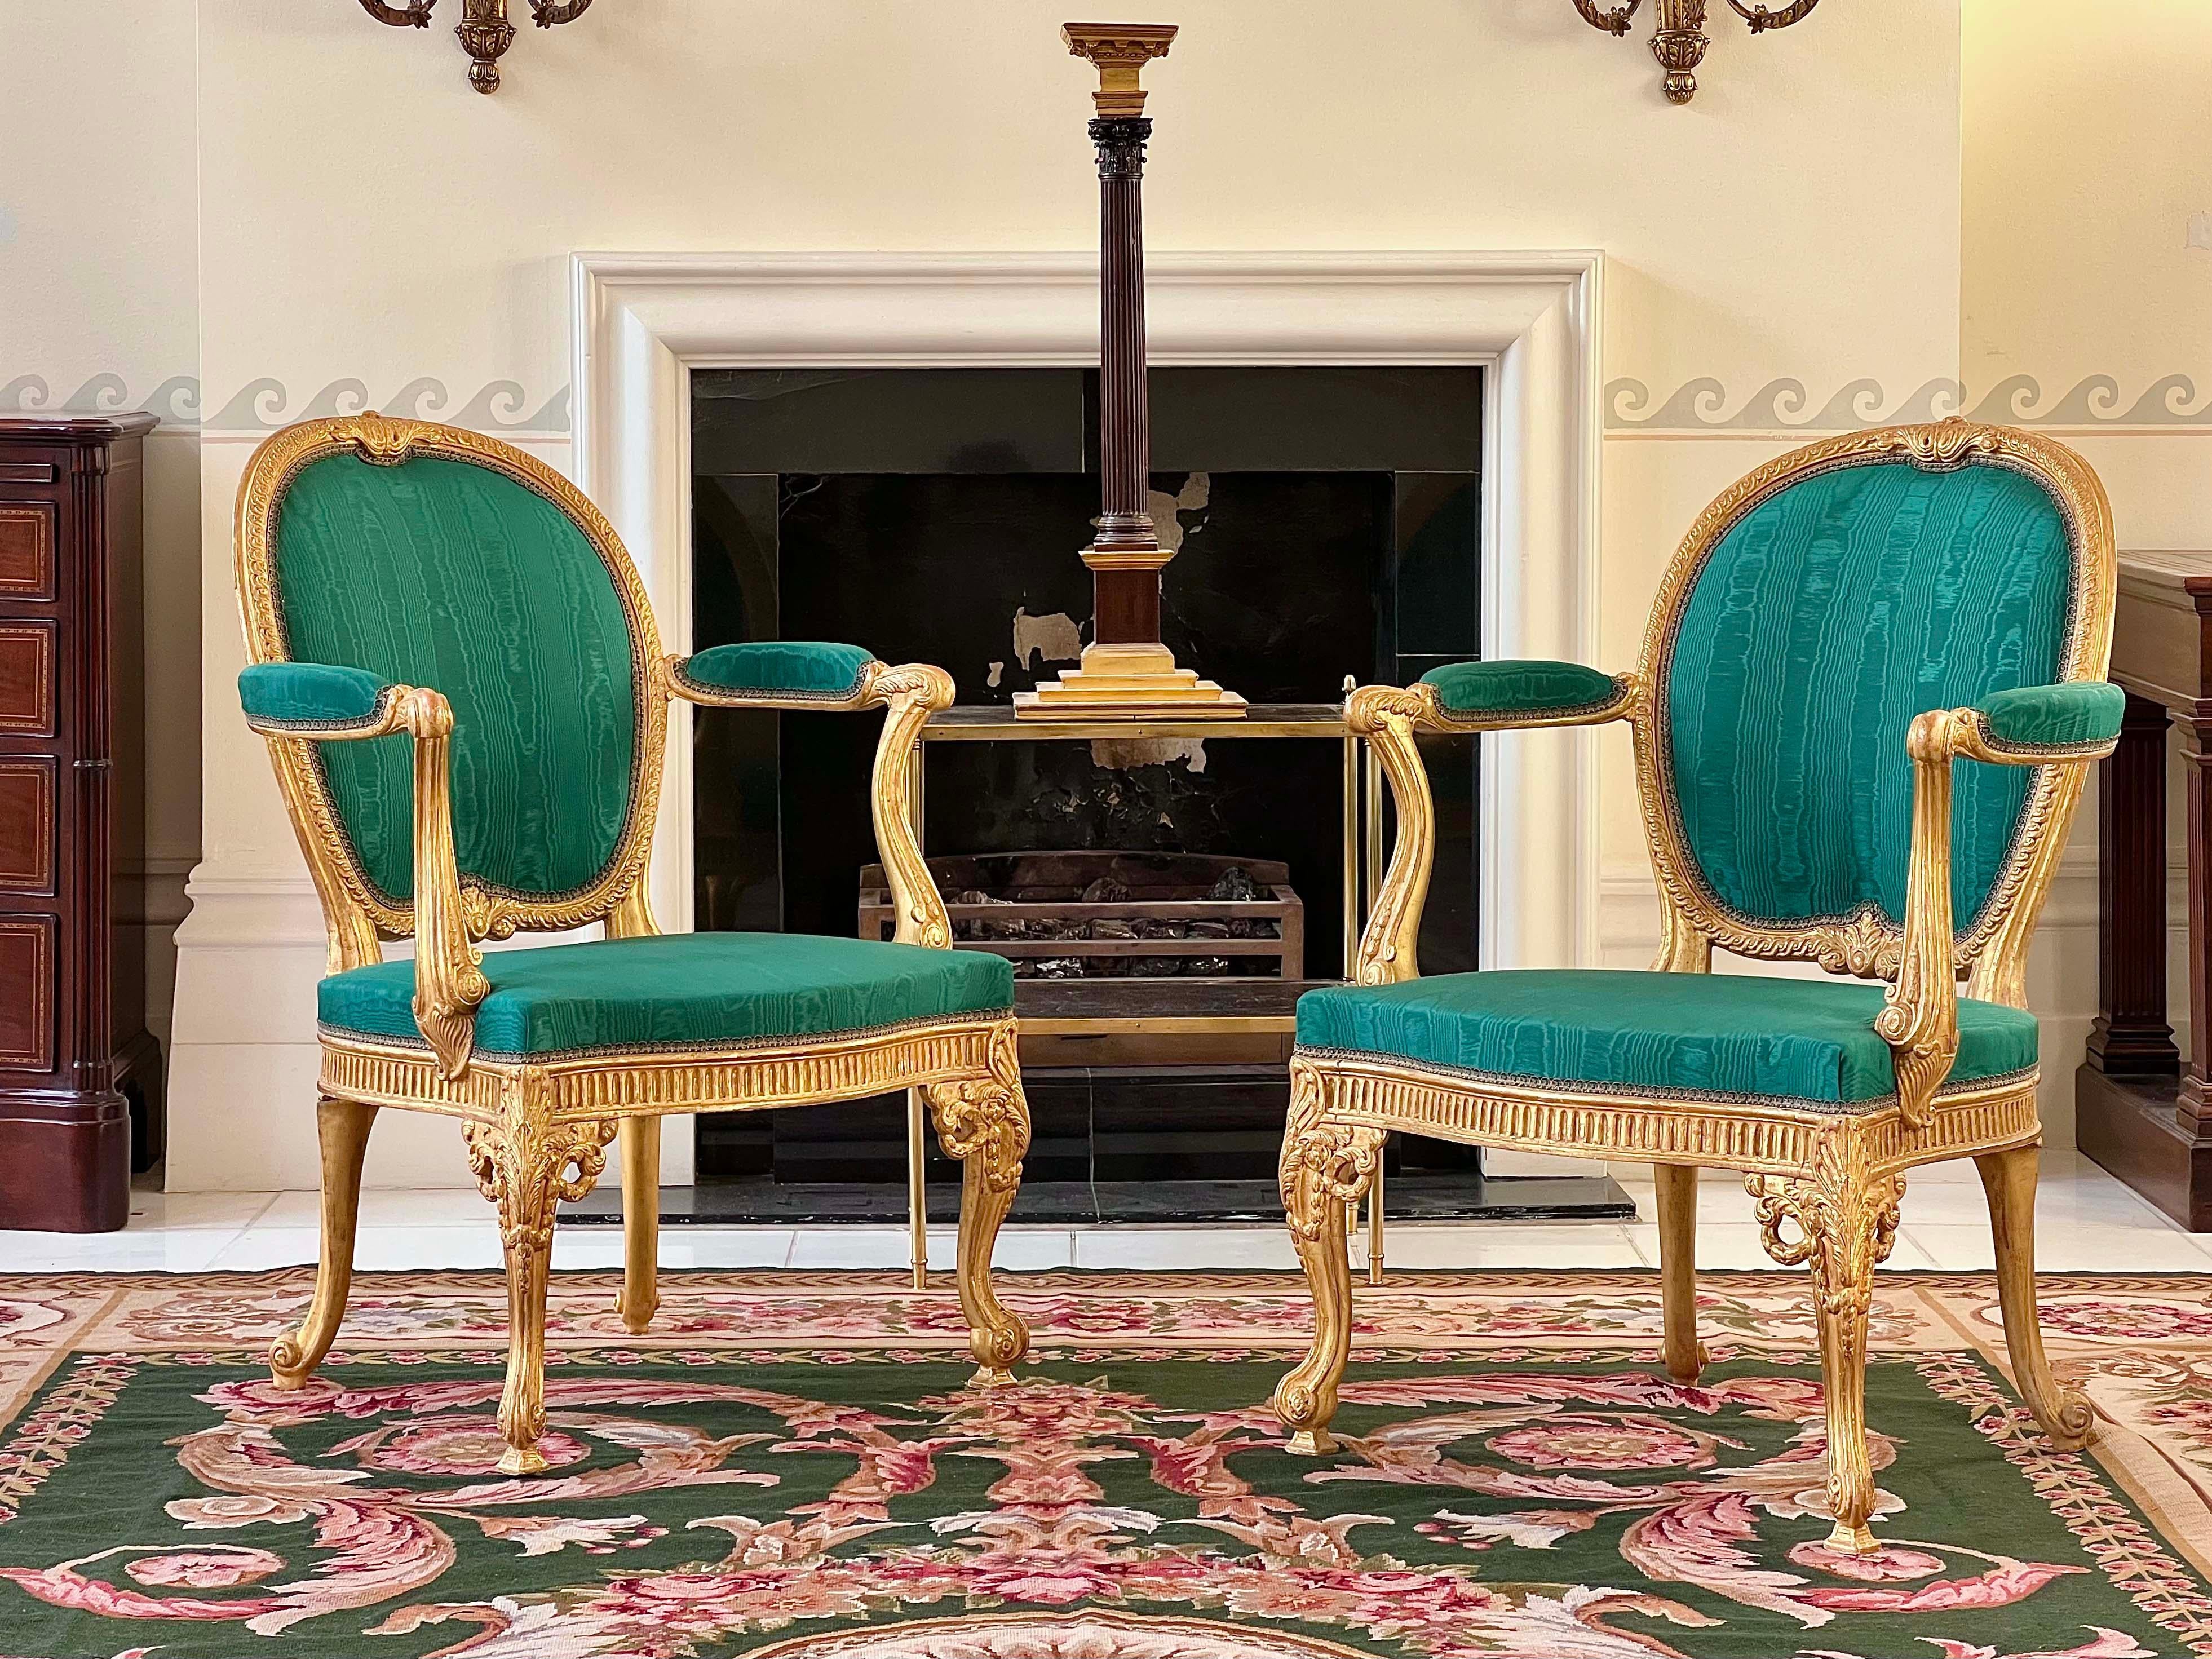 Exceptionnel fauteuil en bois doré de style George III, d'après l'un des plus beaux modèles de Thomas Chippendale. Deux fauteuils disponibles - sélectionnez la quantité 2 pour acheter les deux fauteuils.

Anglais, c. 1900-1920.

Design
Le présent